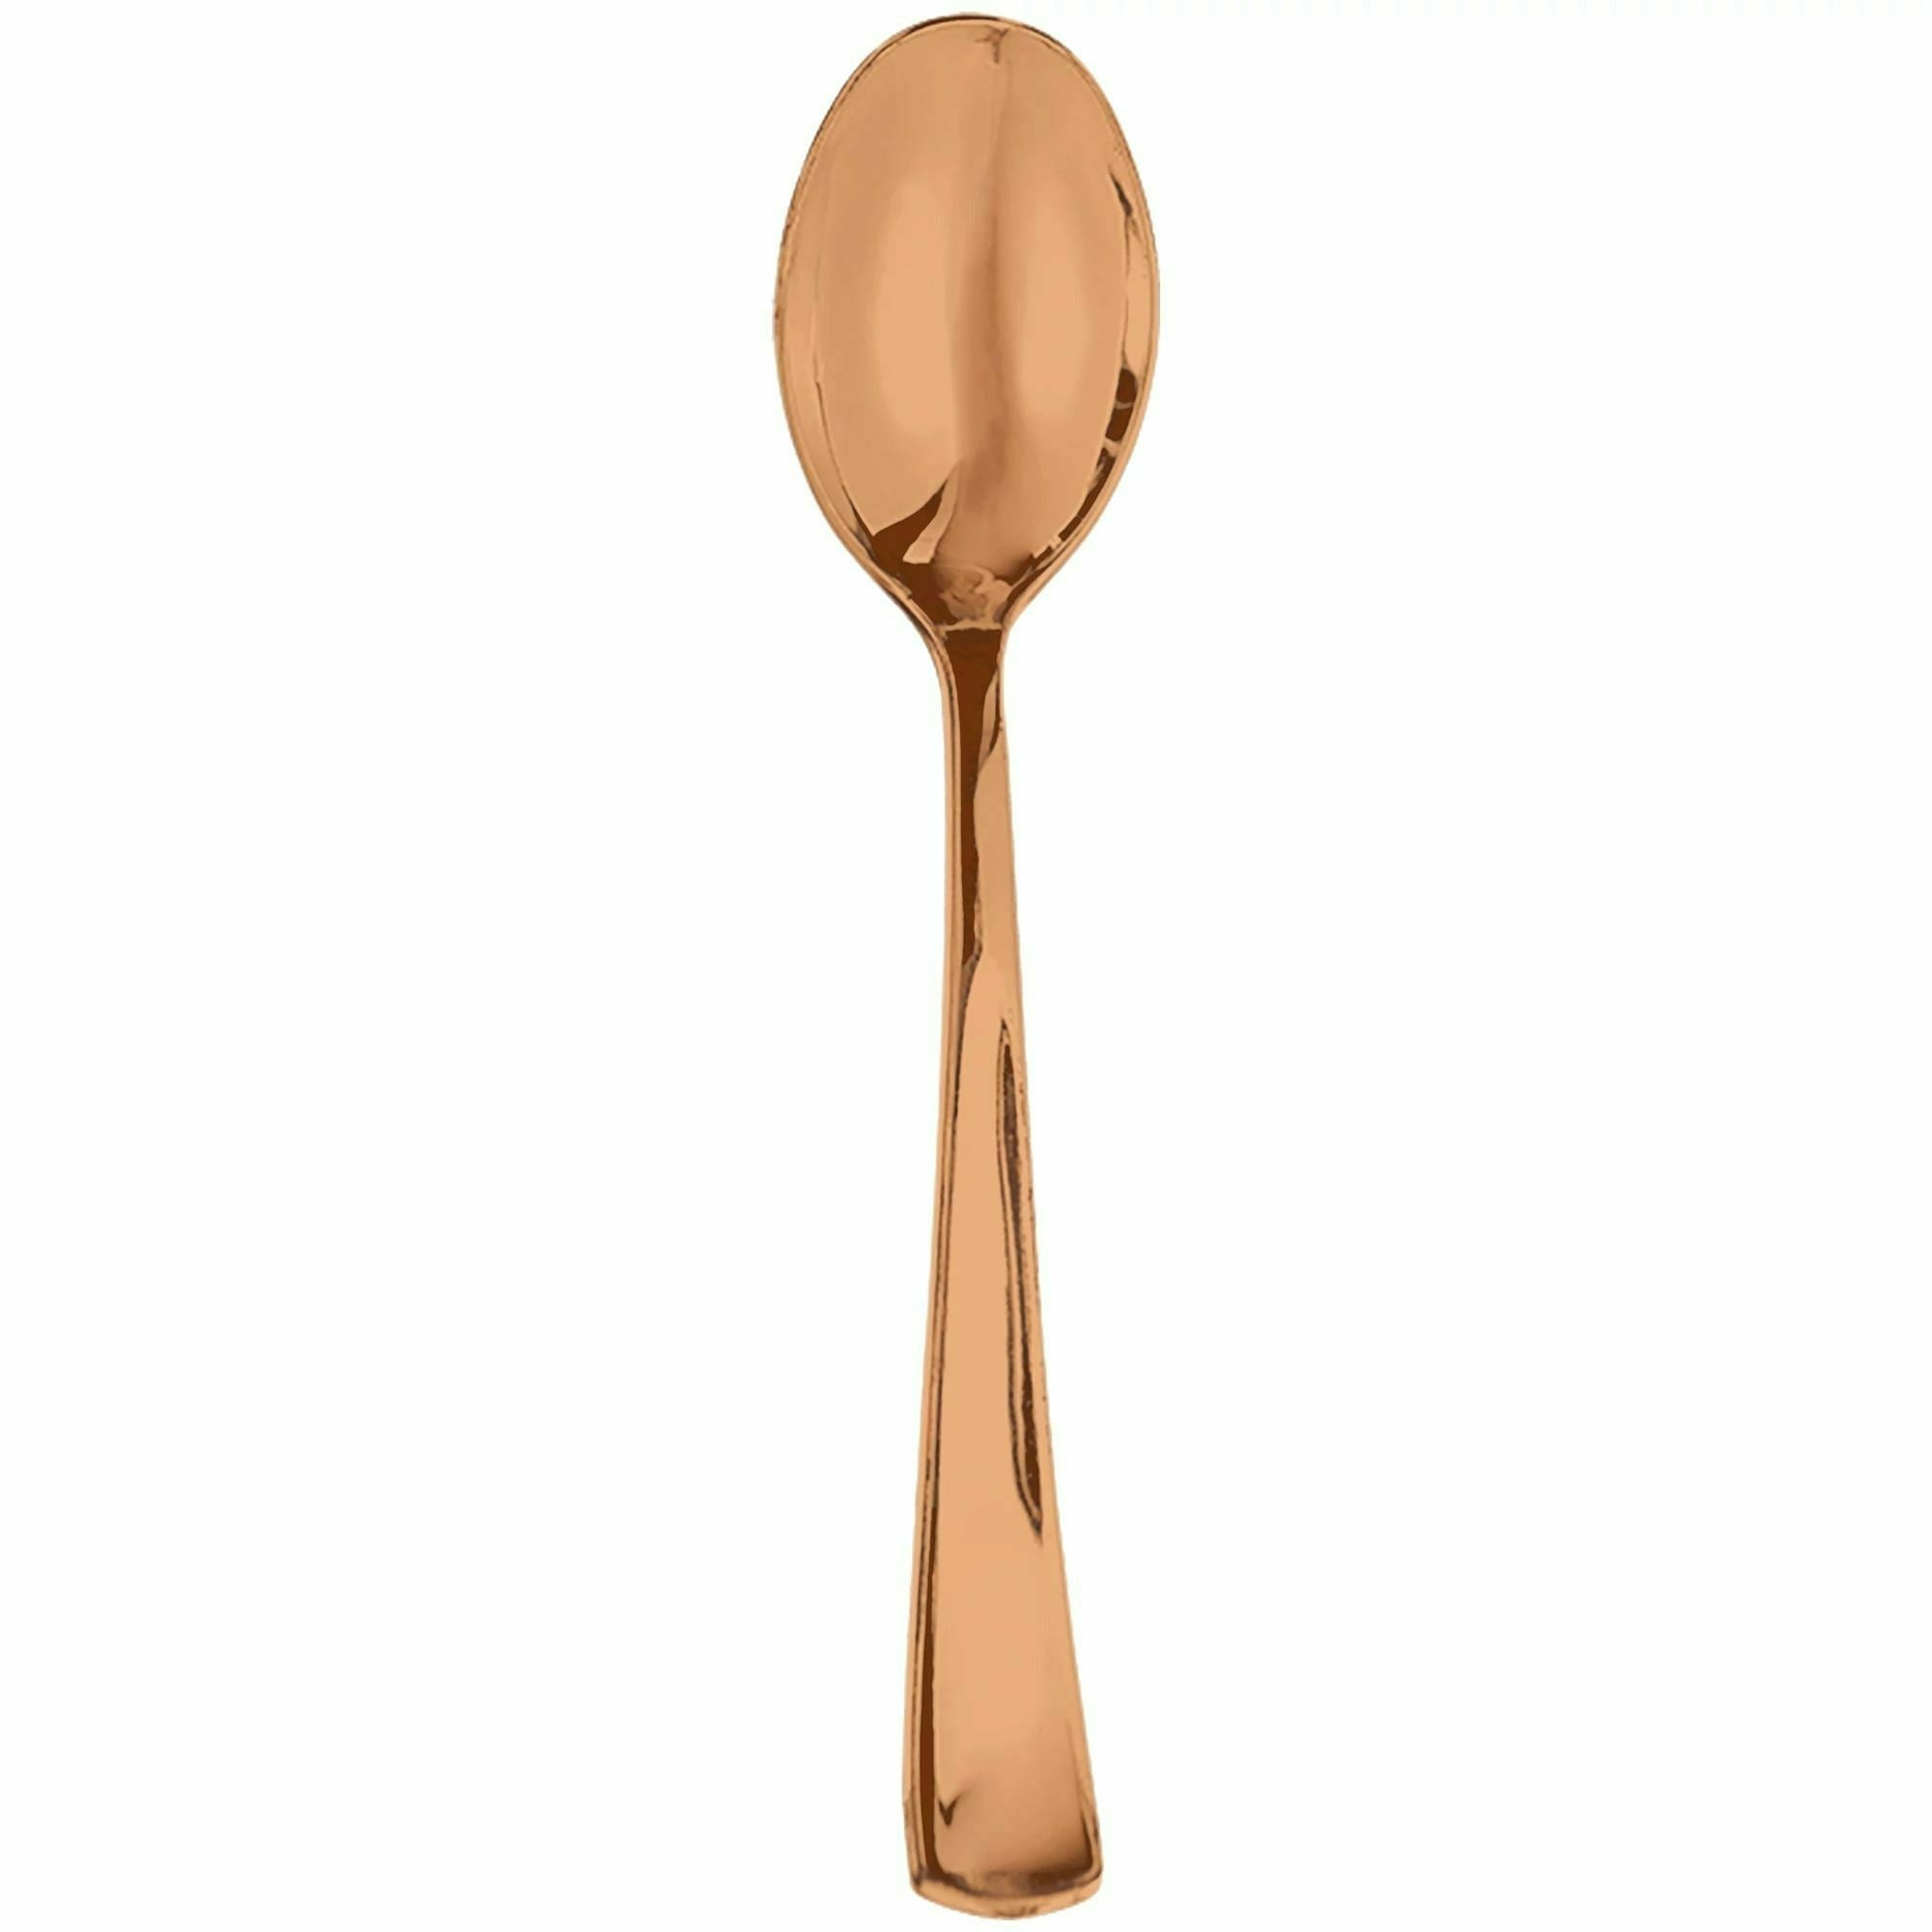 Amscan BASIC Premium Metallic Spoon - Rose Gold